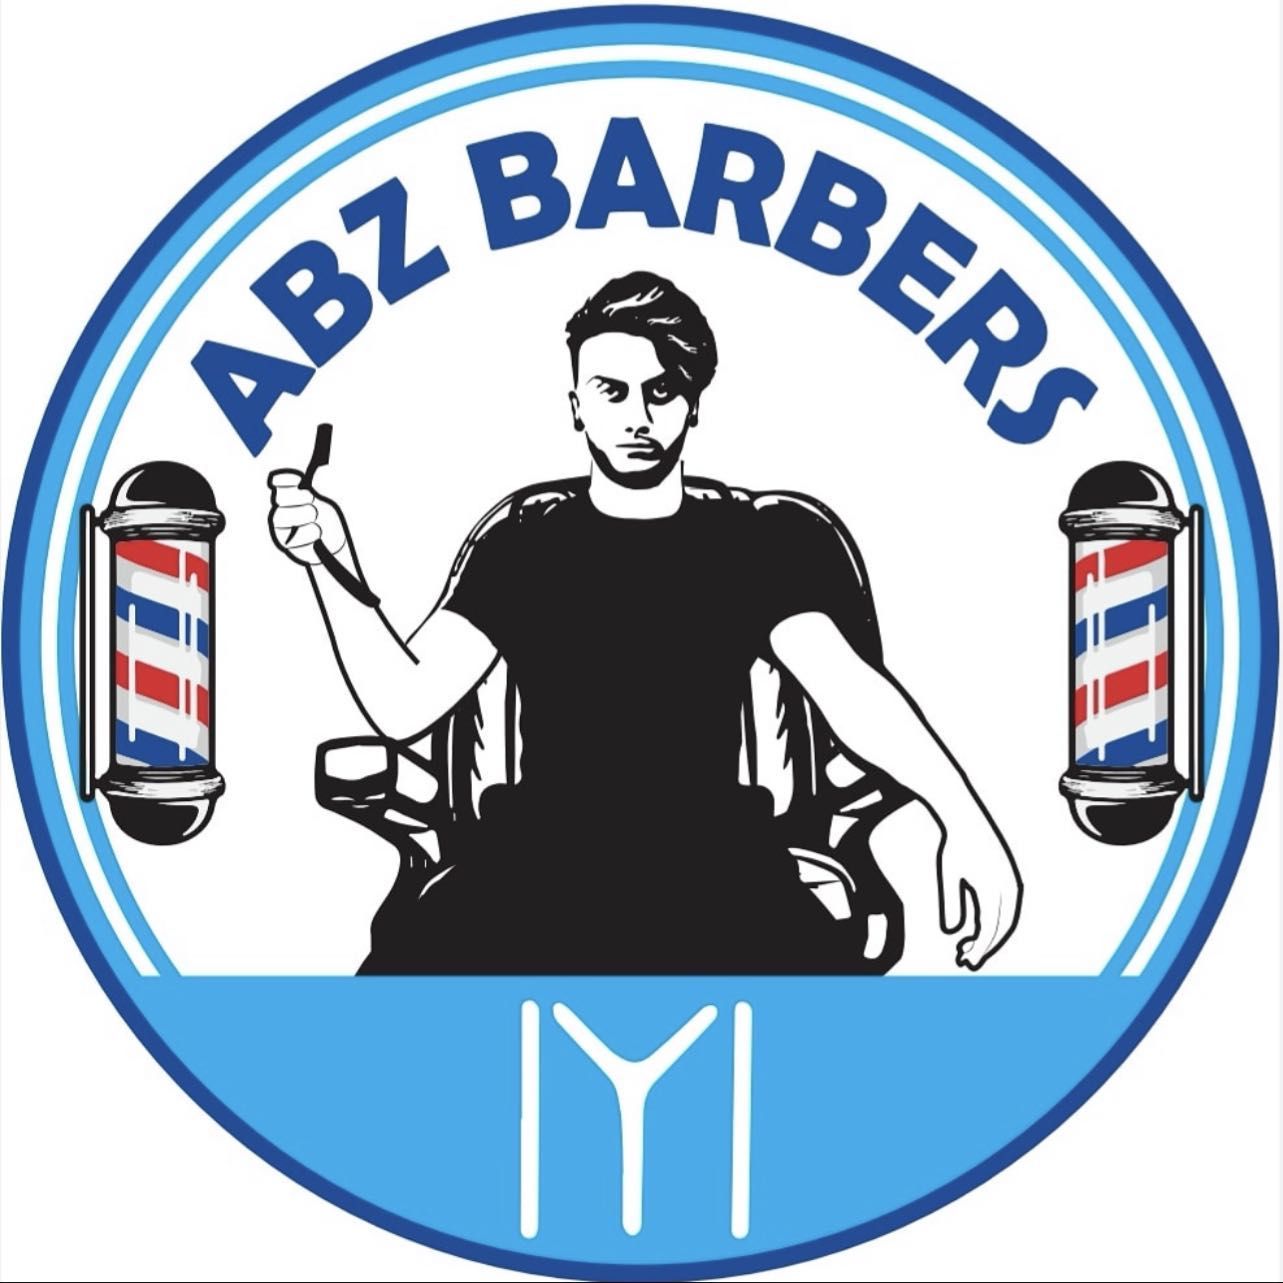 ABZ barbers, Harnall Lane East, CV1 5AG, Coventry